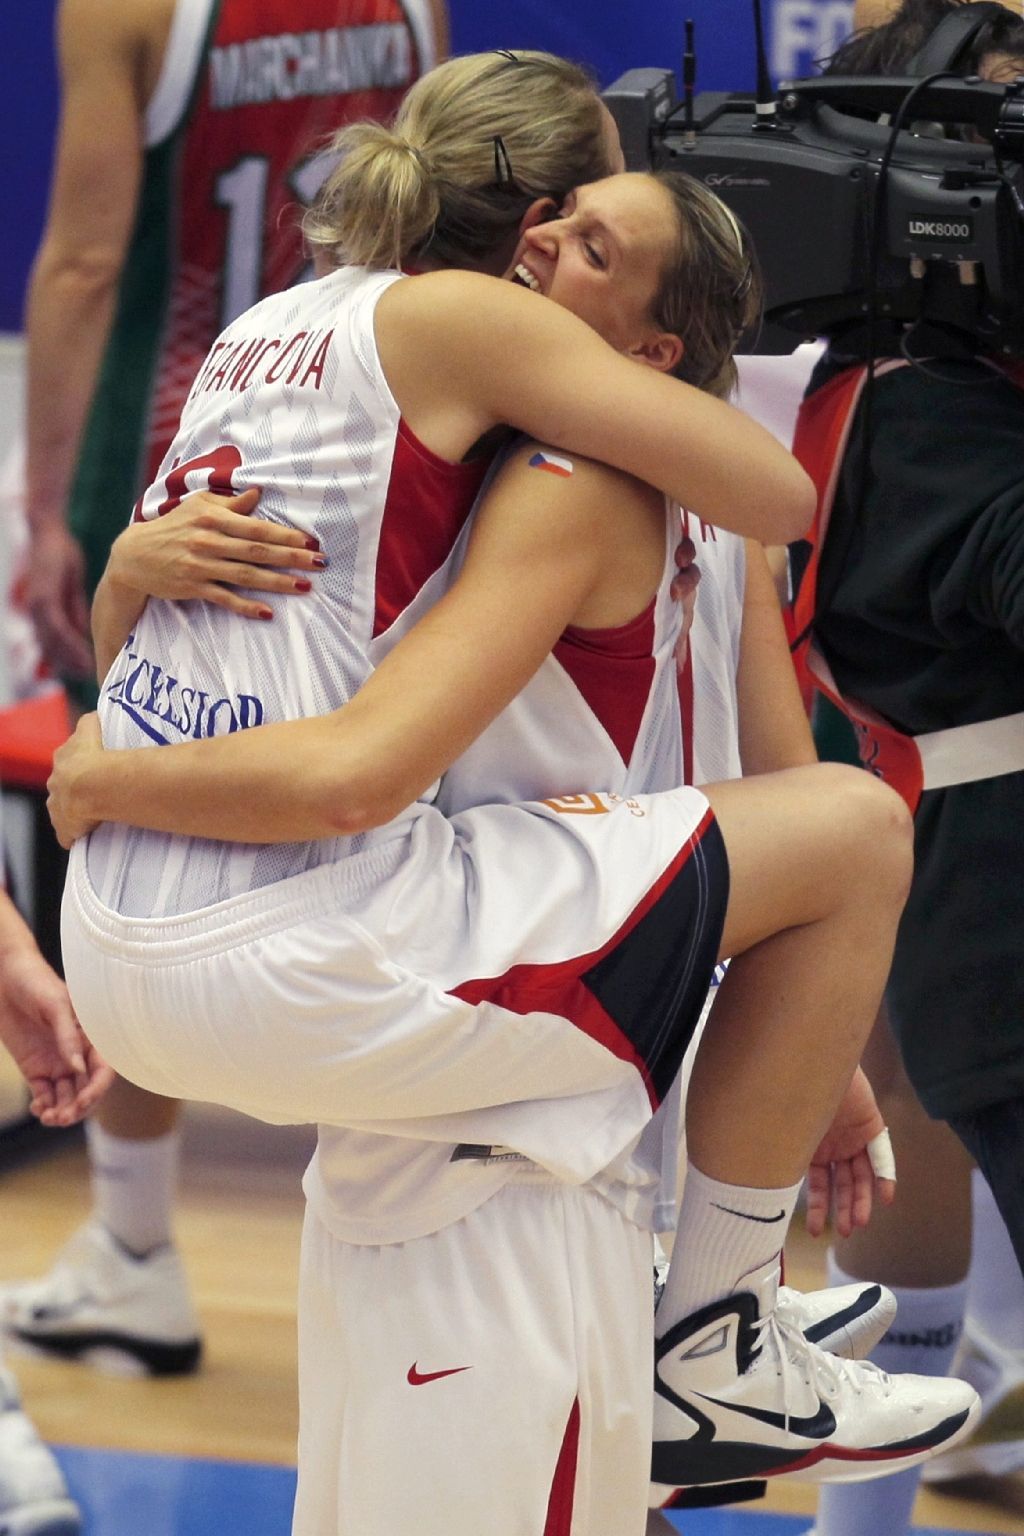 MS v basketbalu, Česko - Bělorusko: Ferančíková a Elhotová